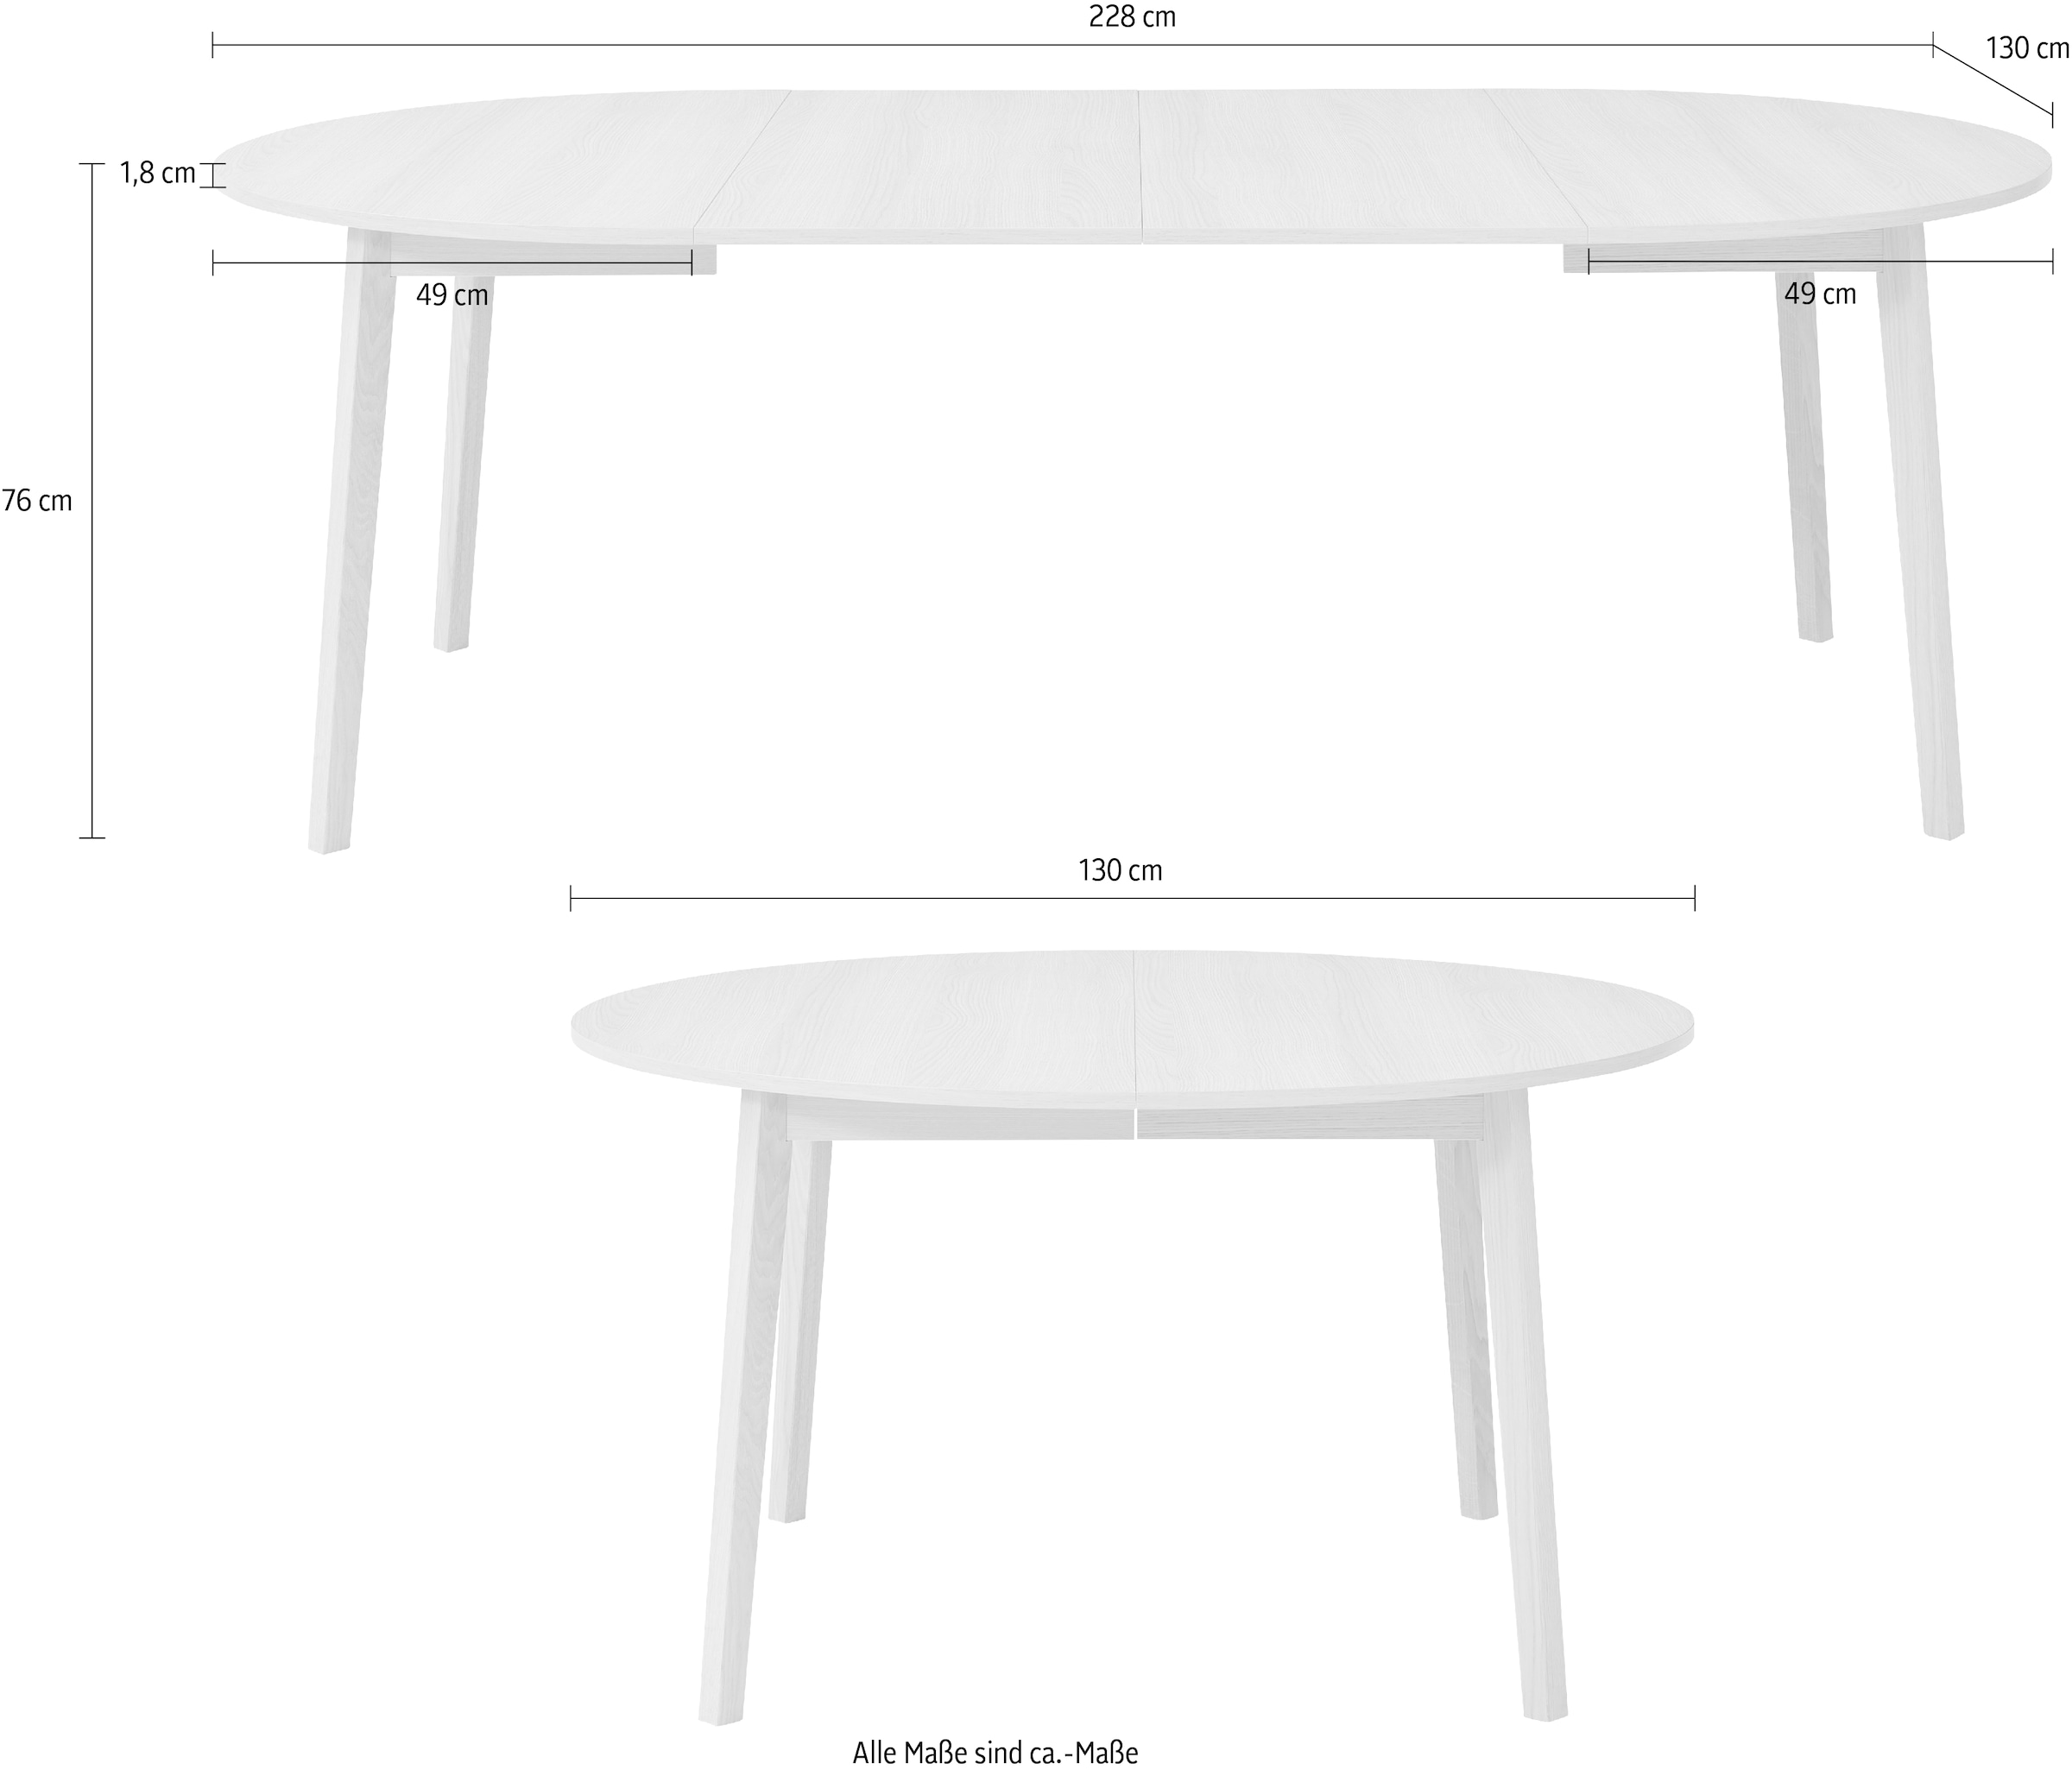 Hammel Furniture Esstisch »Basic by | Hammel BAUR Ø130/228 Massivholz, inklusive kaufen Single«, Gestell aus Einlegeplatten cm, 2